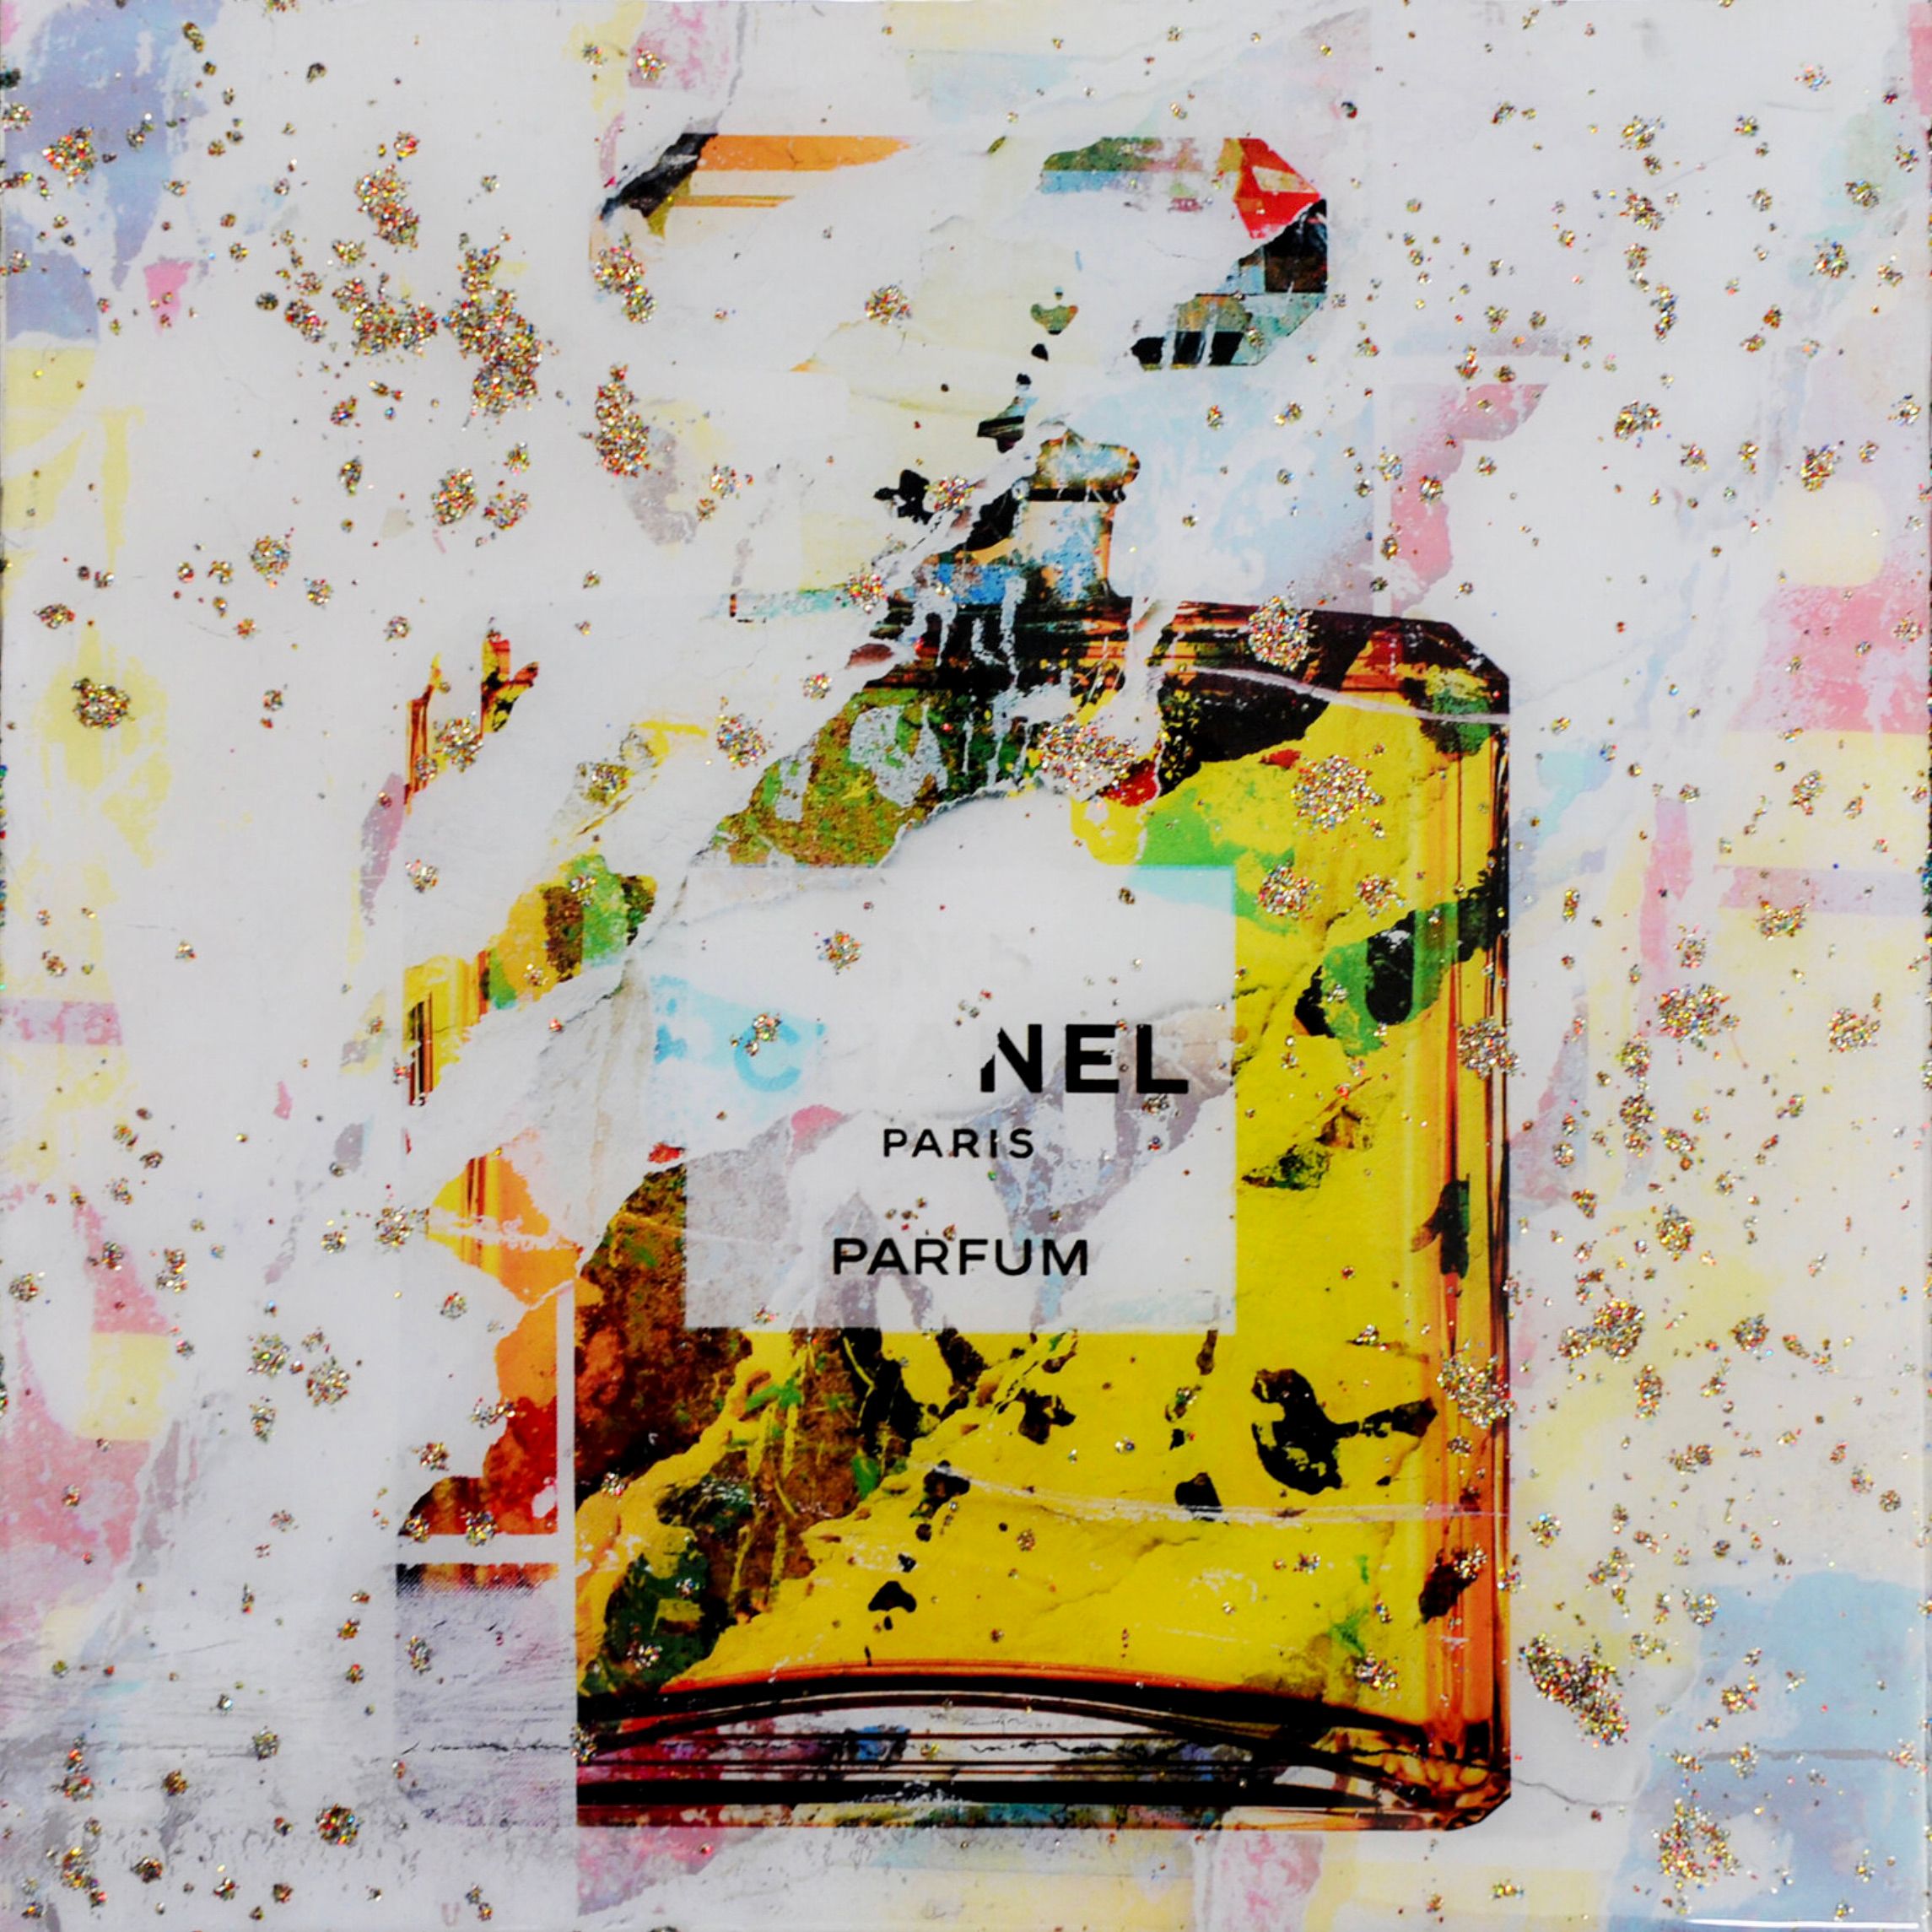 Le "Chanel No.5 small resin edition" de Karin Vermeer est une combinaison numérique et un traitement de photographies, de peintures et de collages pour créer de nouvelles œuvres d'art pop en couleur.